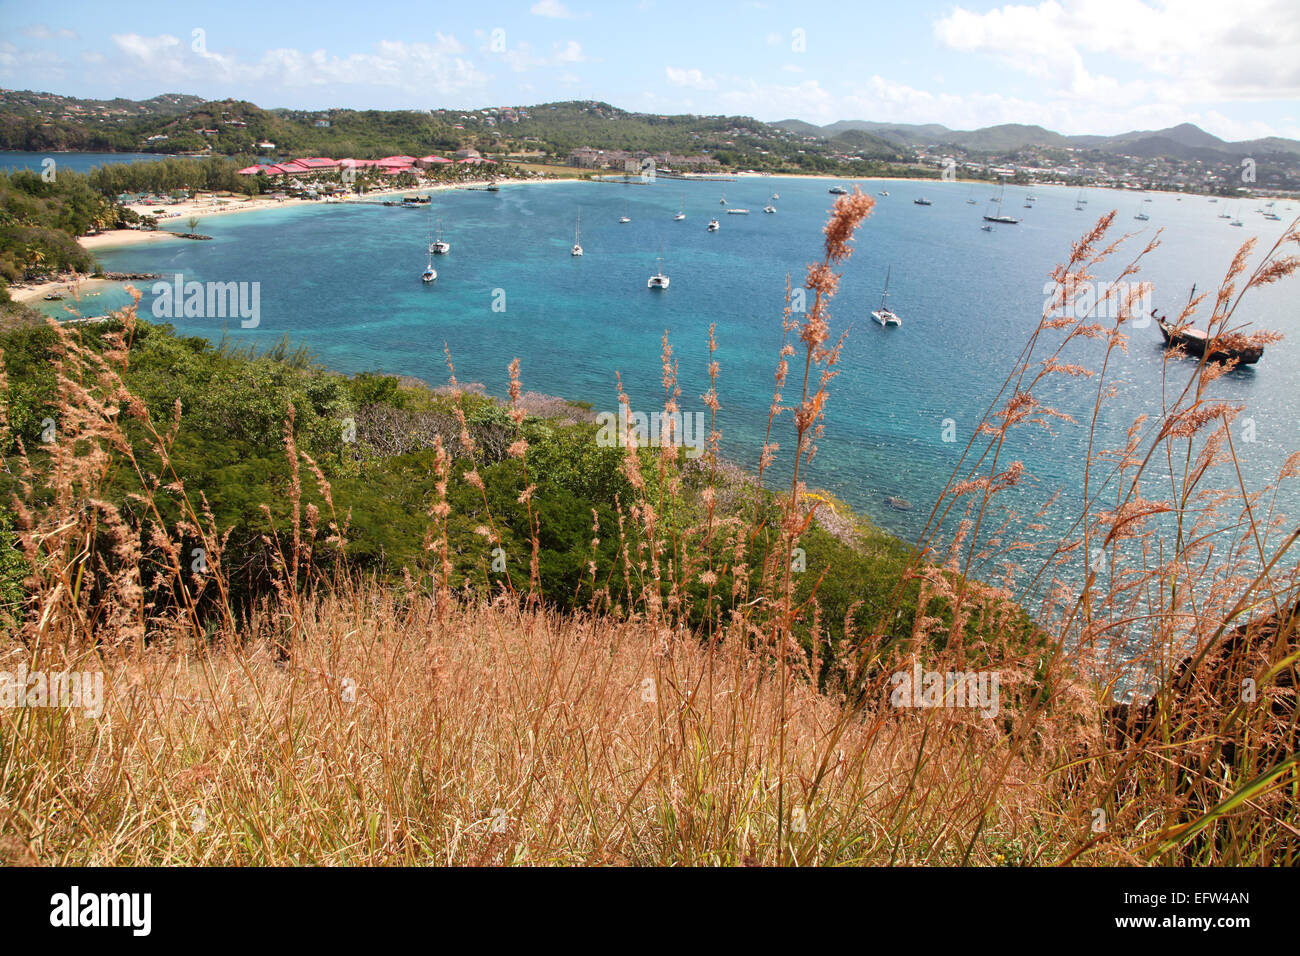 La playa Causeway y complejo hotelero de la isla Pigeon, Santa Lucía, el Caribe Foto de stock